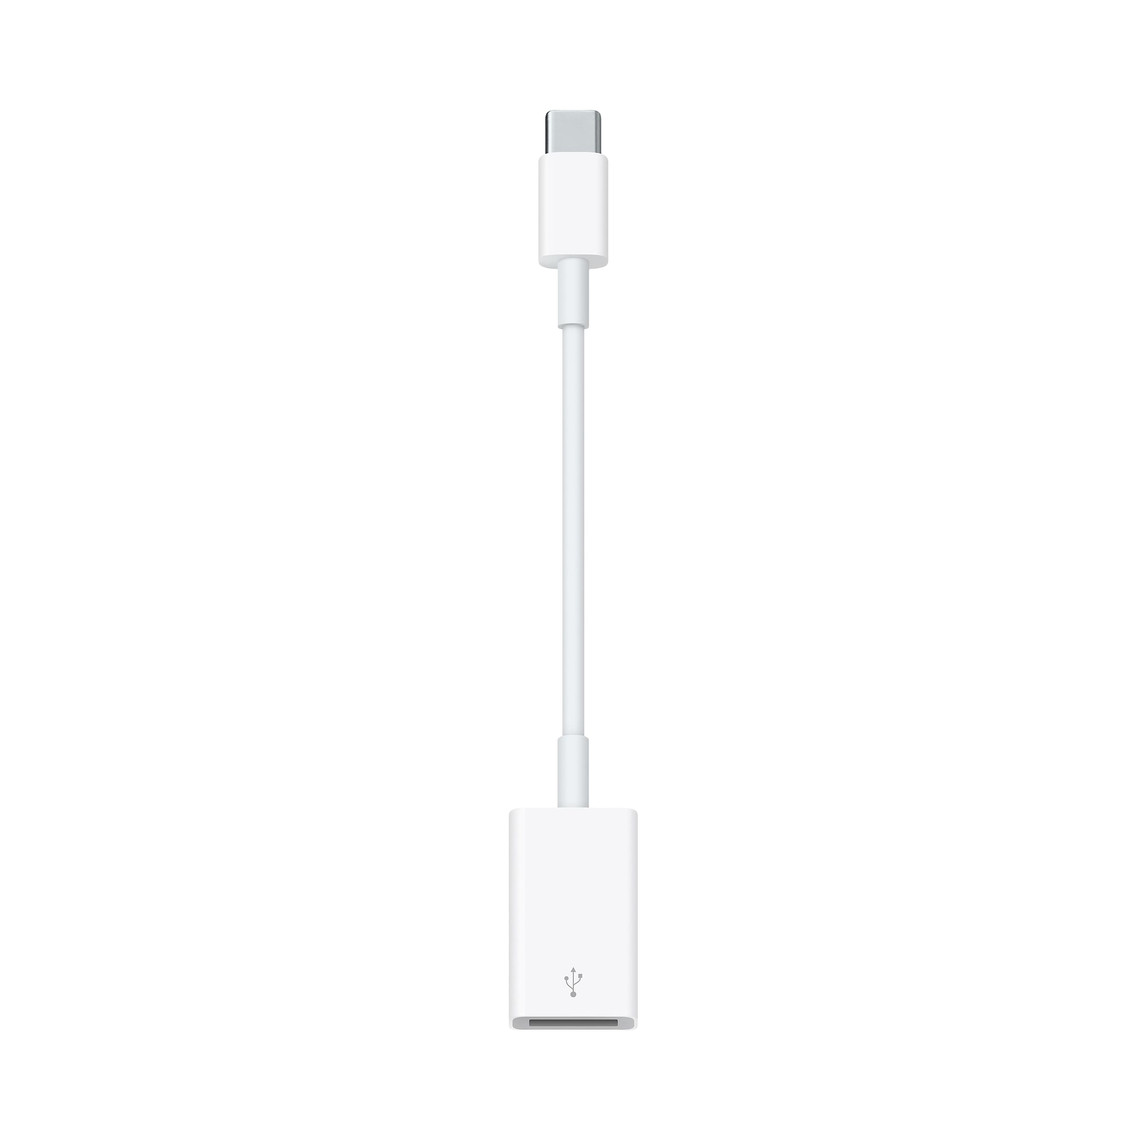 El adaptador de USB-C a USB te permite conectar tus dispositivos iOS y tus accesorios con USB estándar a un Mac con puerto USB-C o Thunderbolt 3 (USB-C).